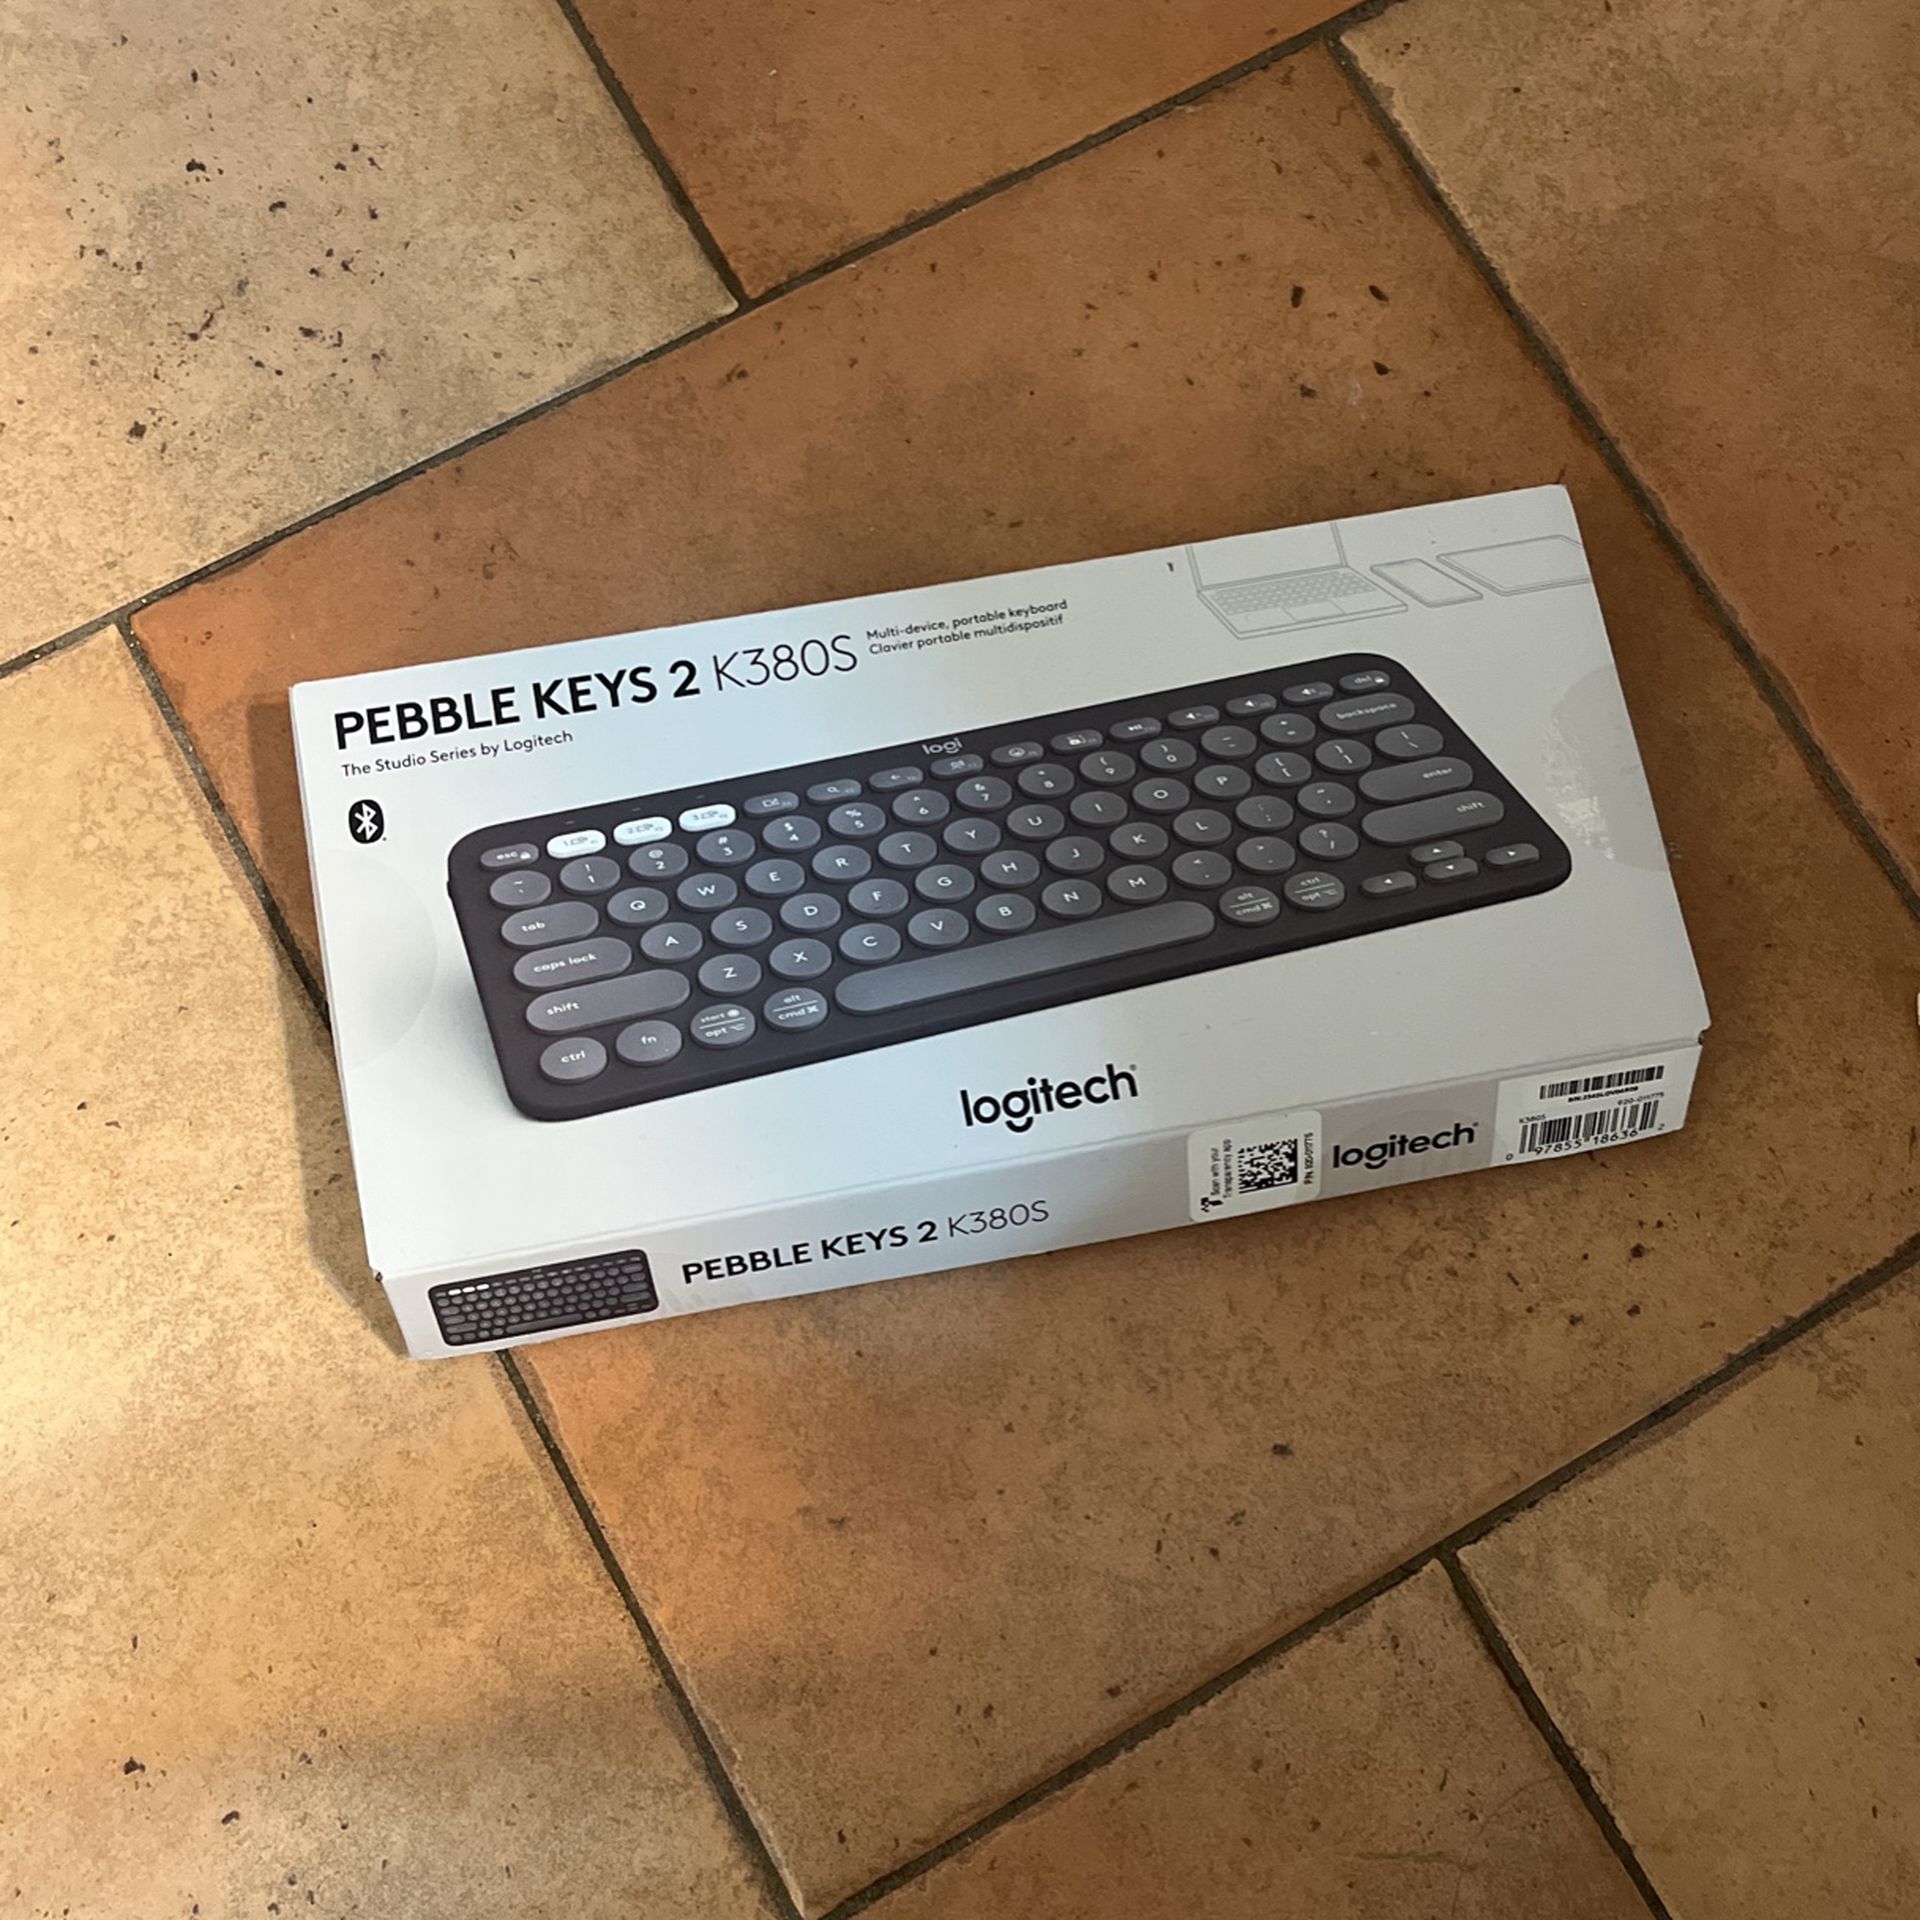 Pebble Keys 2 K380S Keyboard 